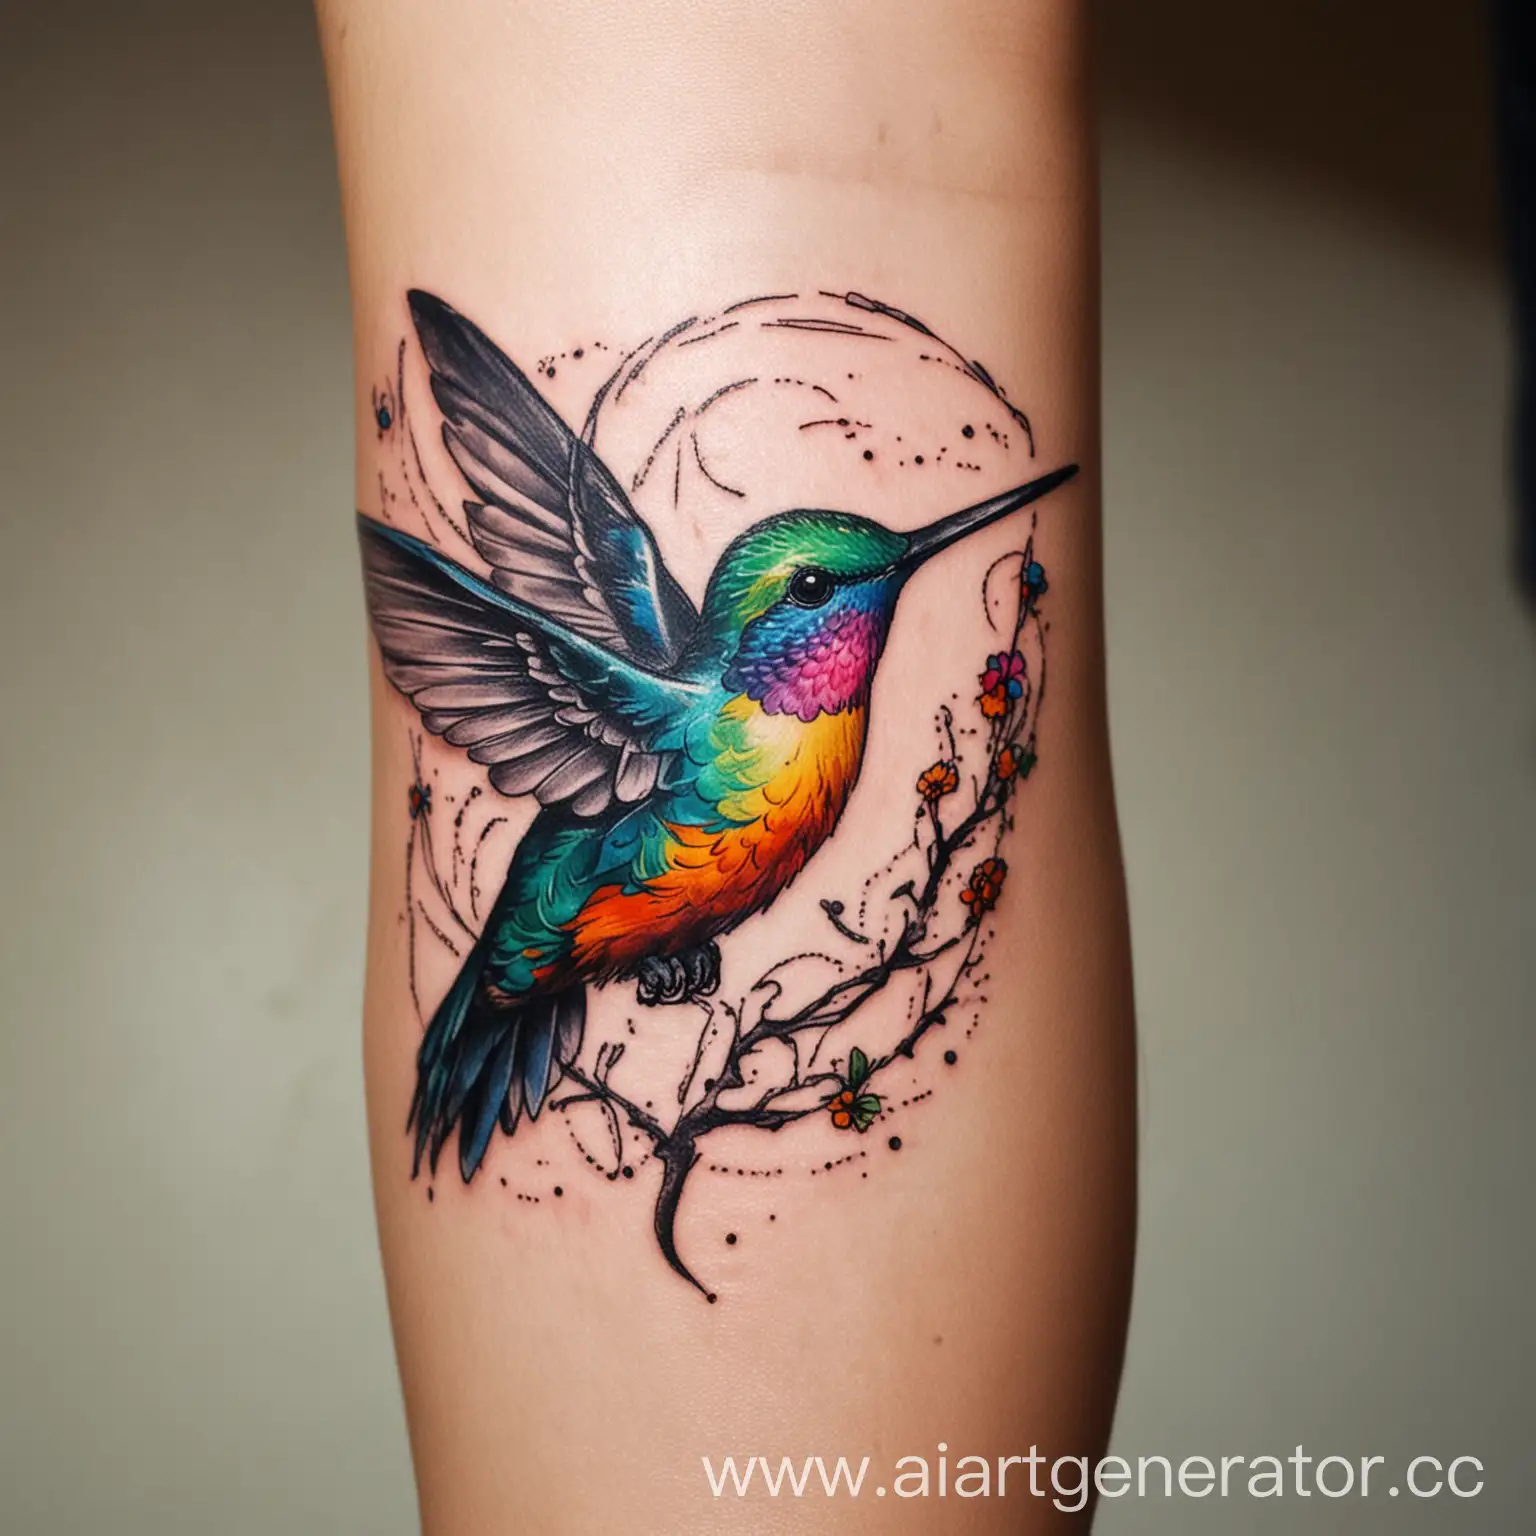 нарисуй цветную татуировку на руке на тему птица колибри, Сингапур, путешествие, самолет, легкость